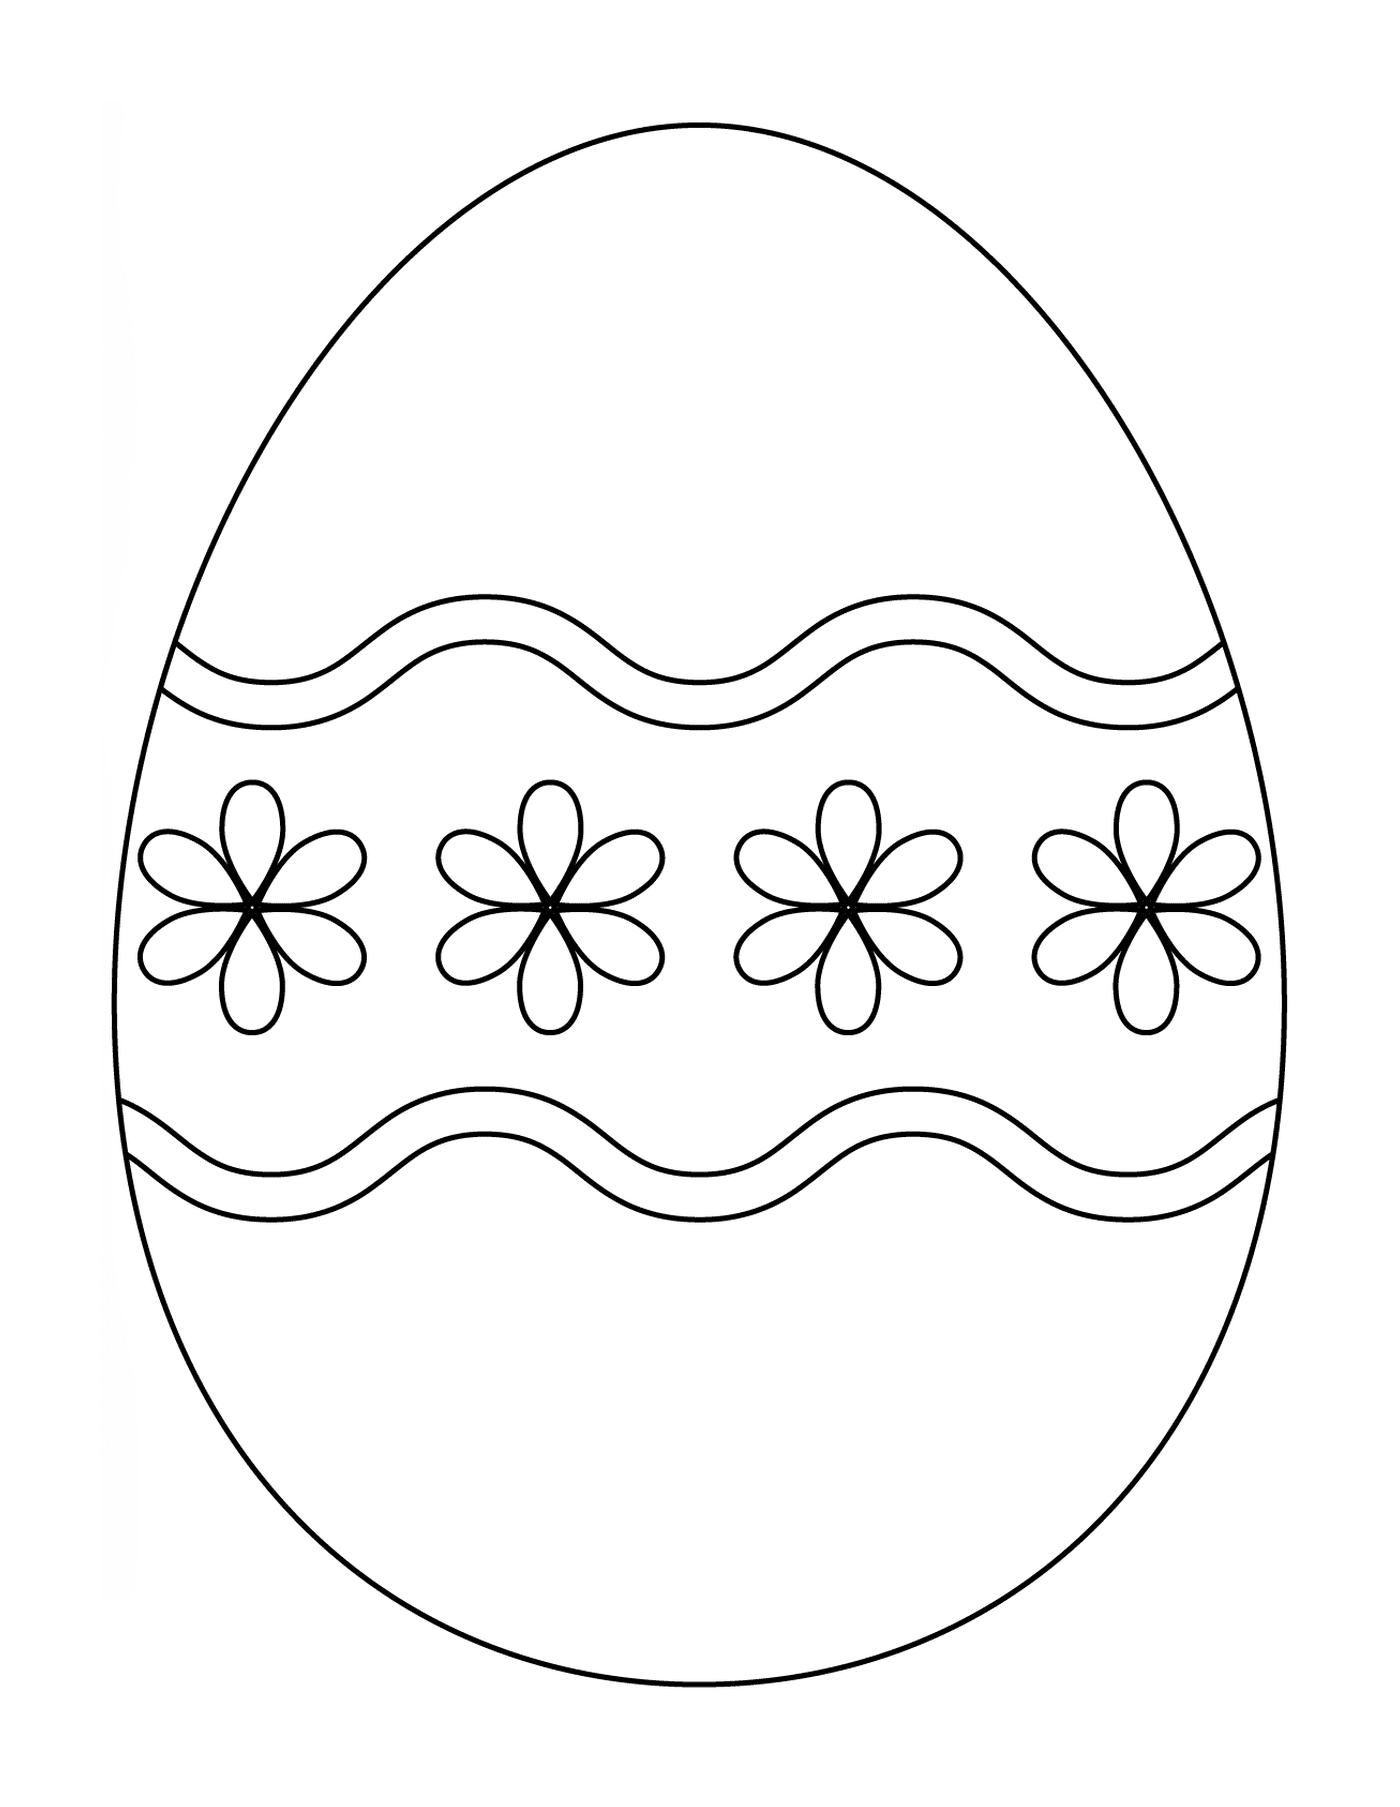 coloriage oeuf de paques avec simple flower pattern